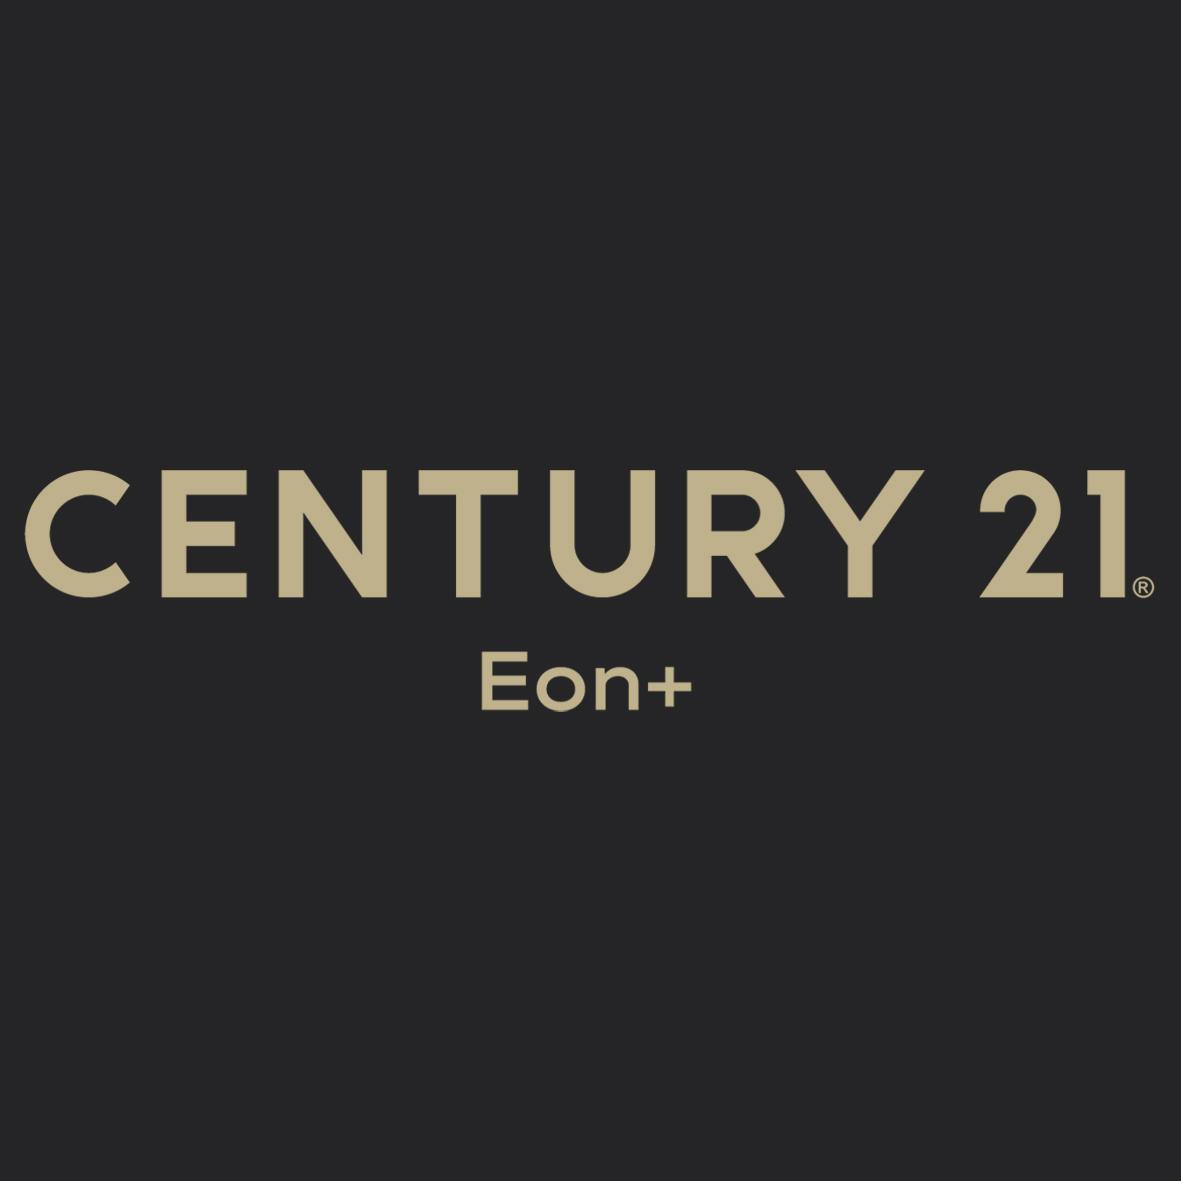 CENTURY 21 Eon+